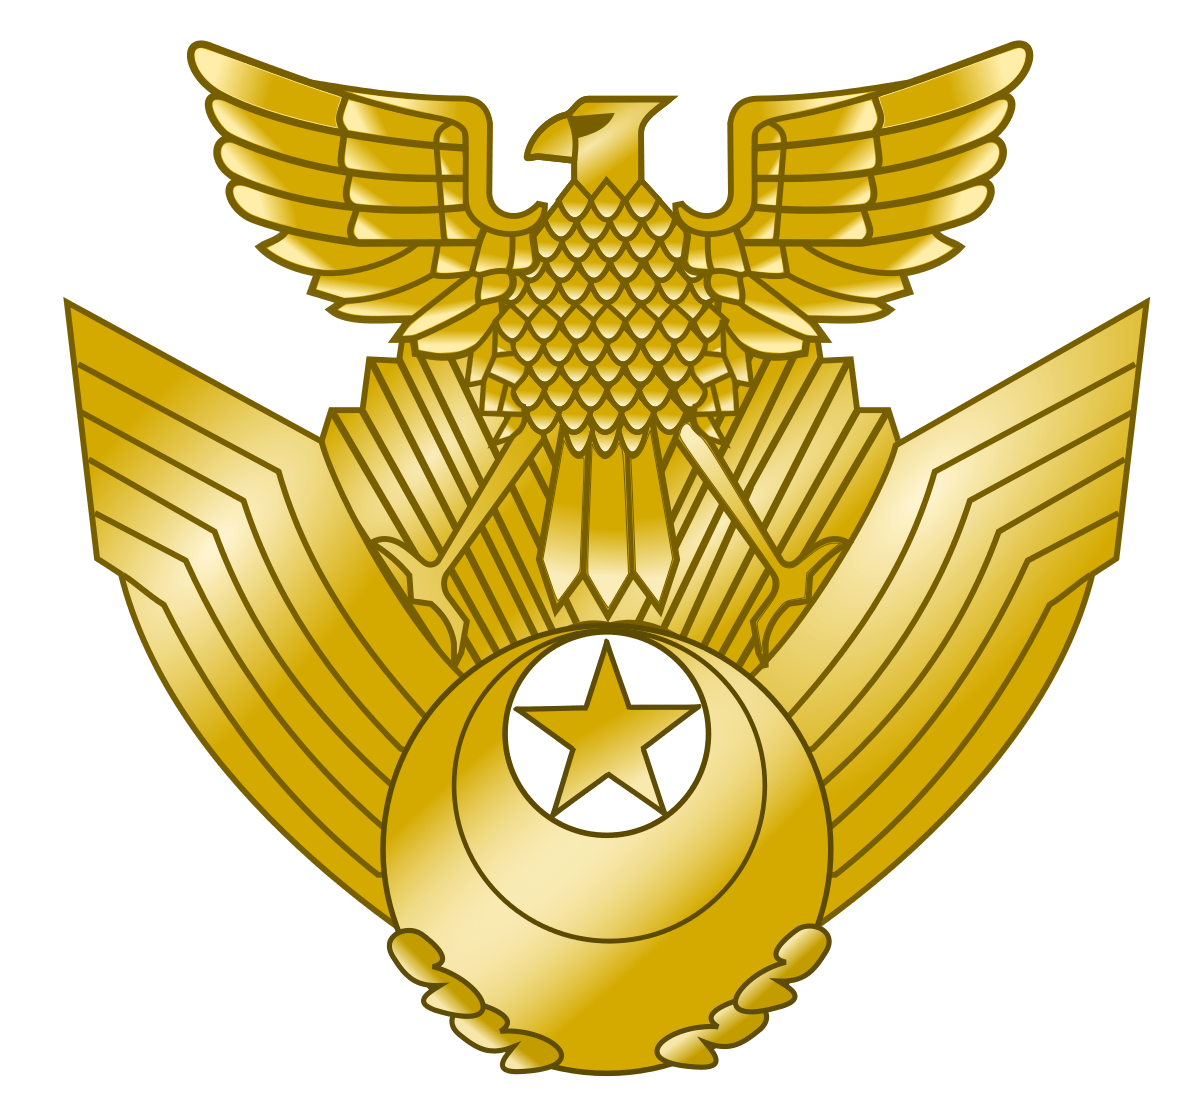 Japan Air Logo - Japan Air Self-Defense Force